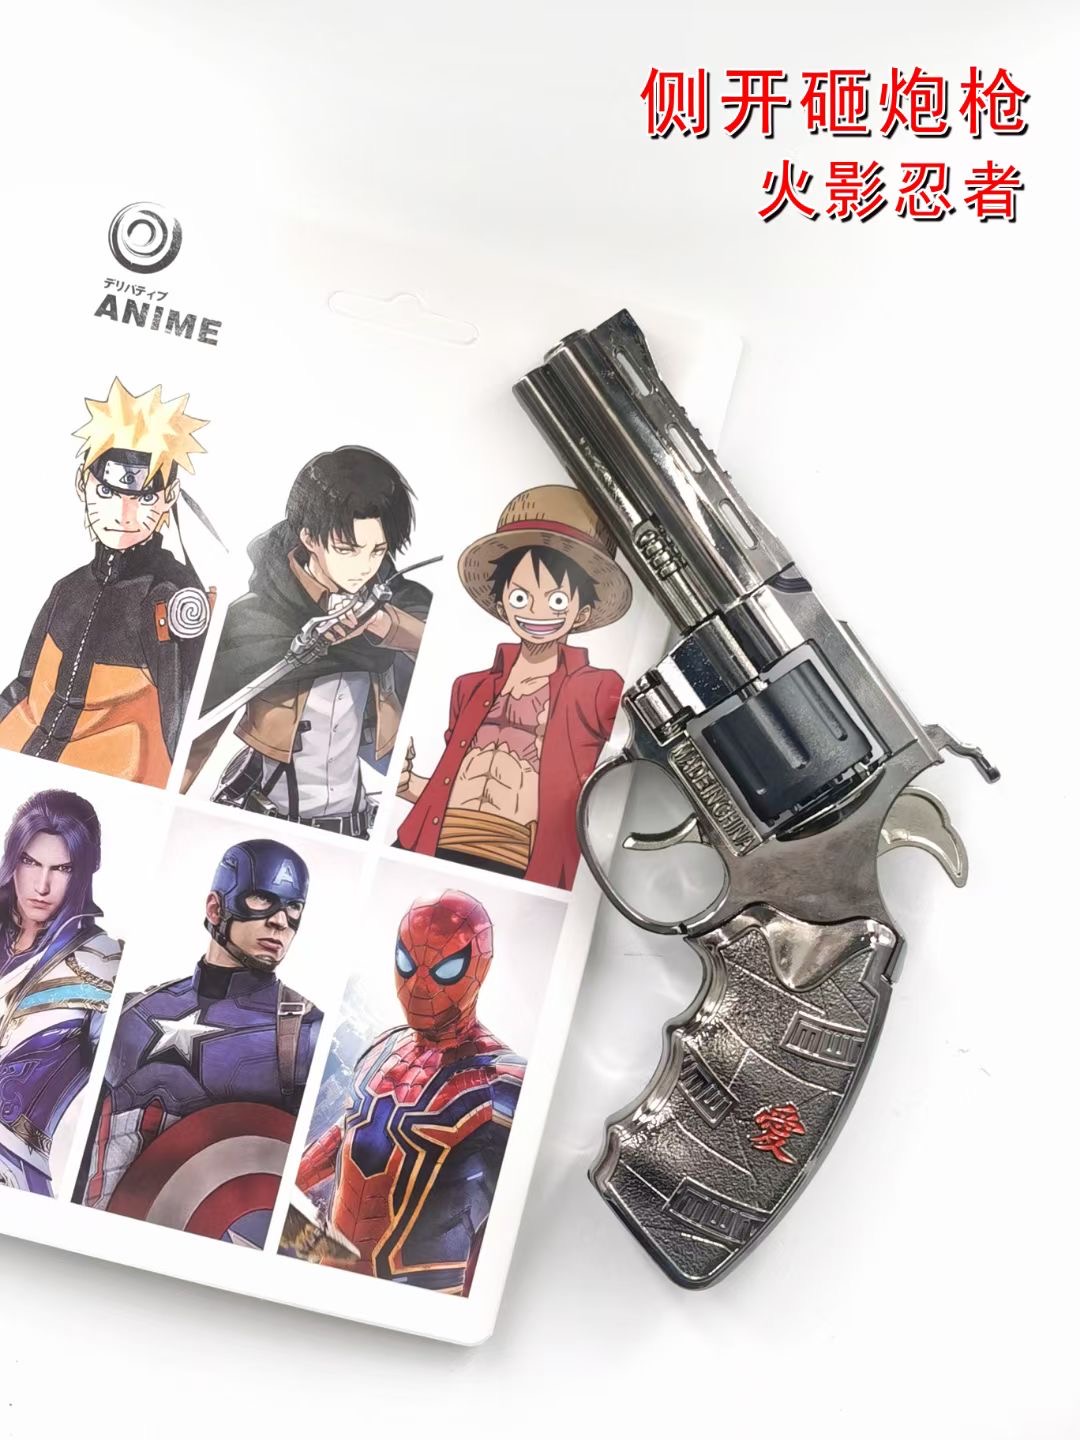 Naruto anime Side opening and smashing gun toy